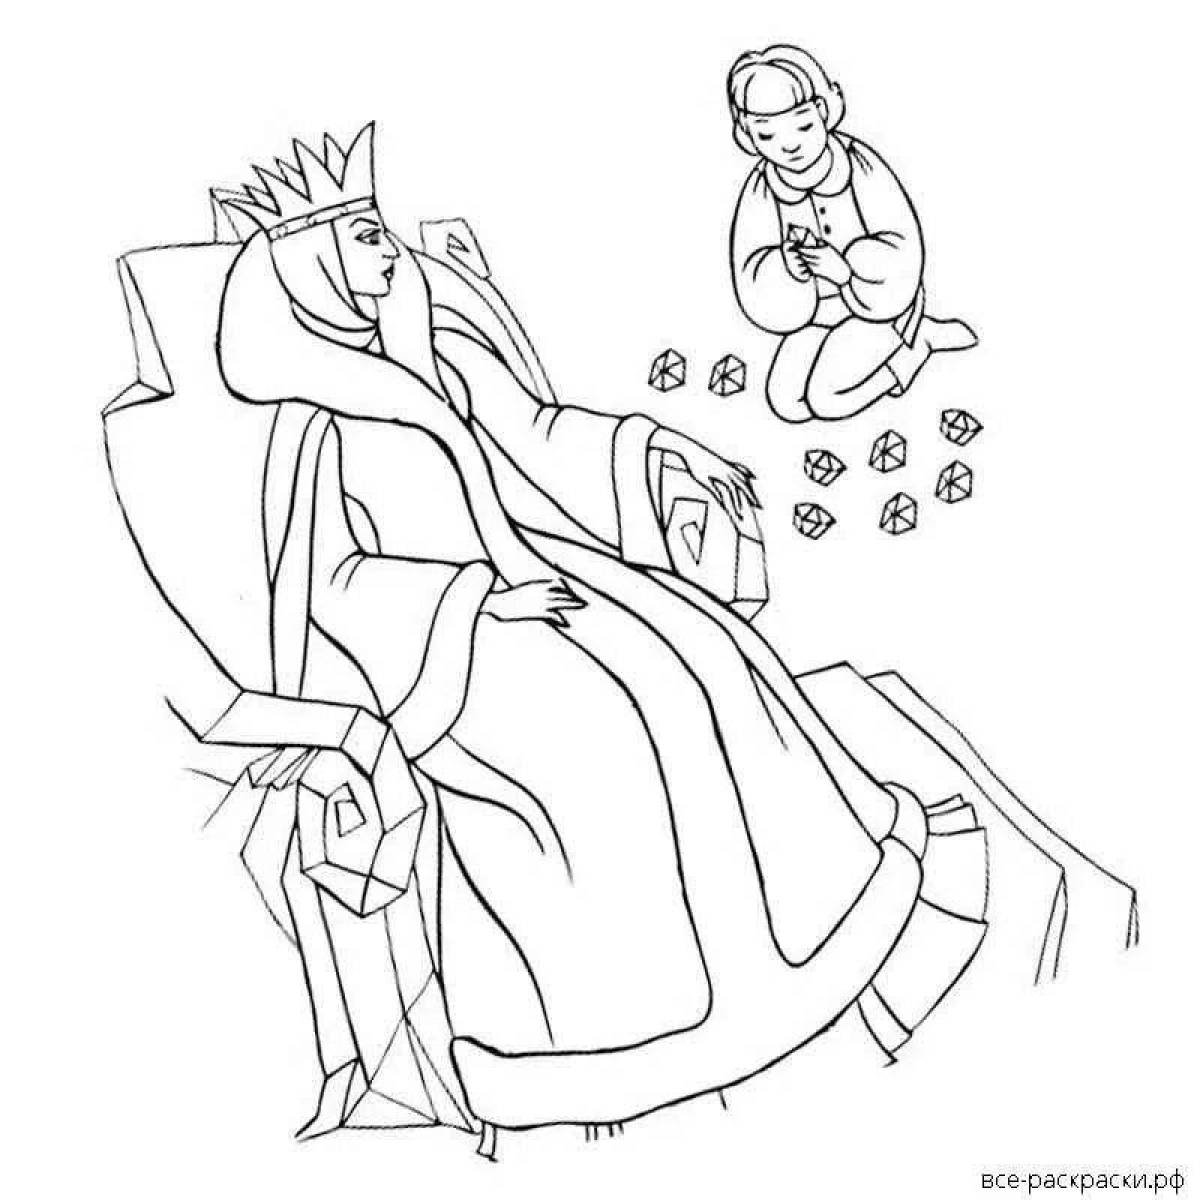 Нарисовать иллюстрацию к сказке снежная королева. Раскраска Снежная Королева Хранители чудес.